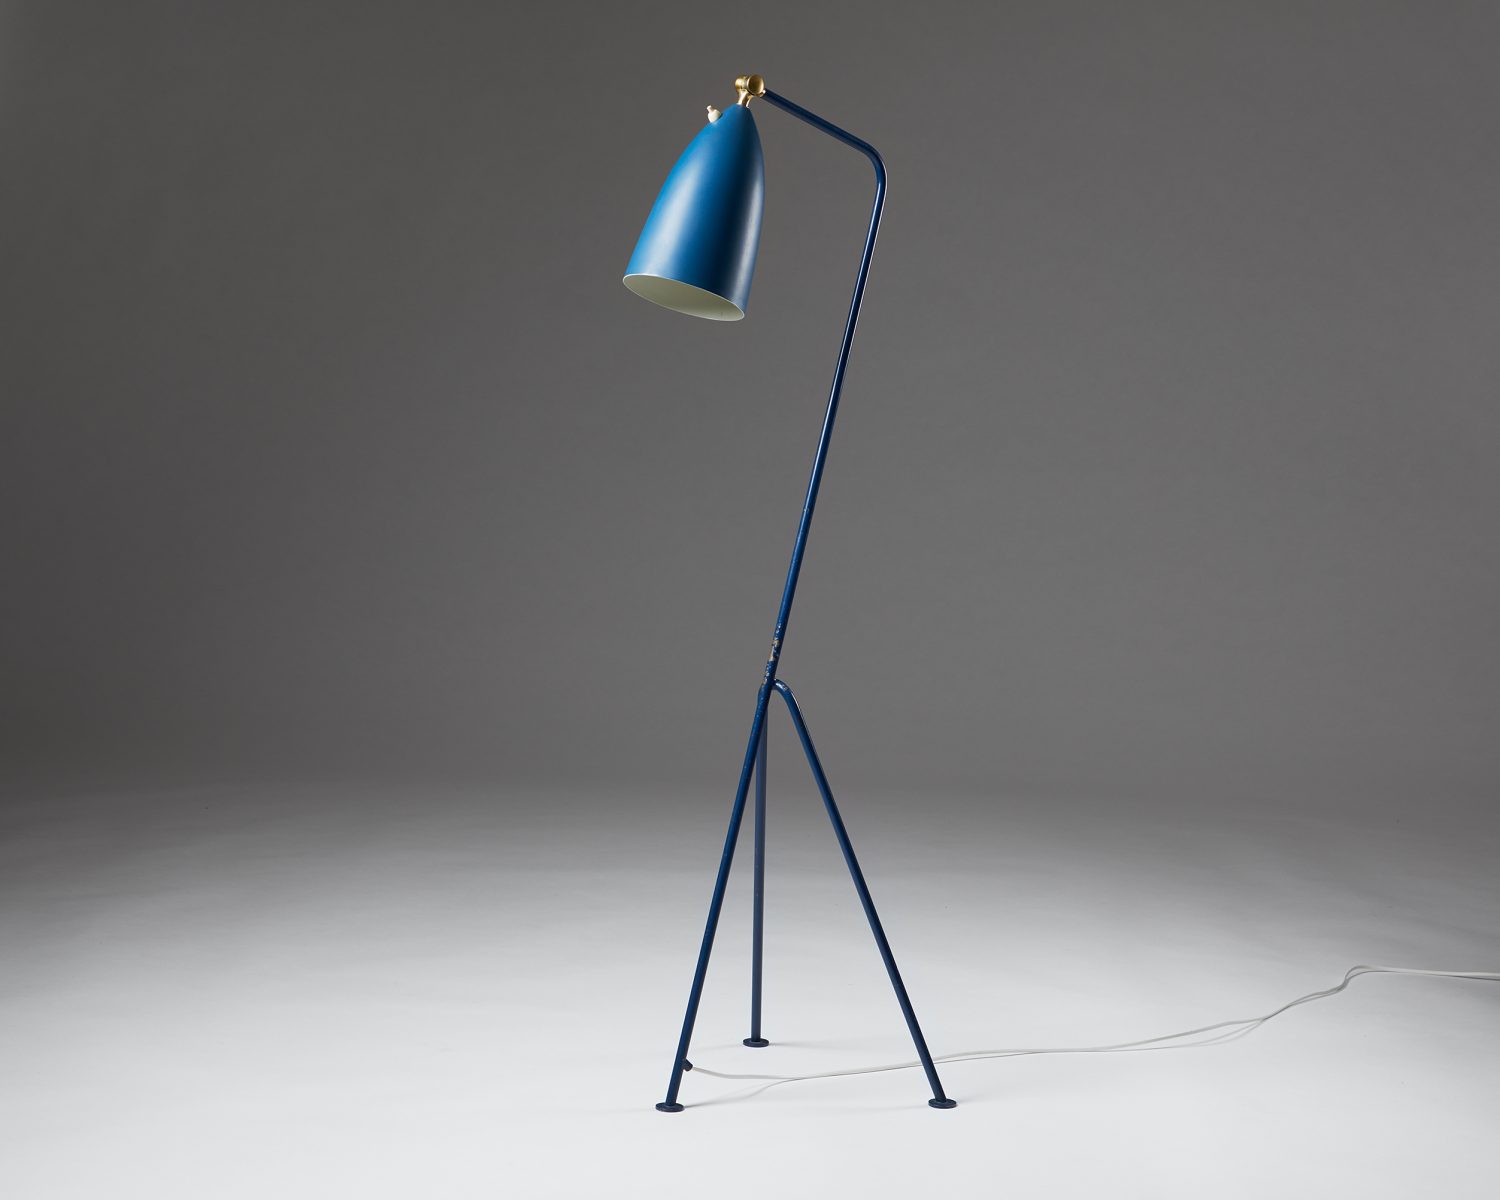 Floor lamp 'Grasshopper' model G-33 designed by Greta Magnusson Grossman  for Bergboms, — Modernity